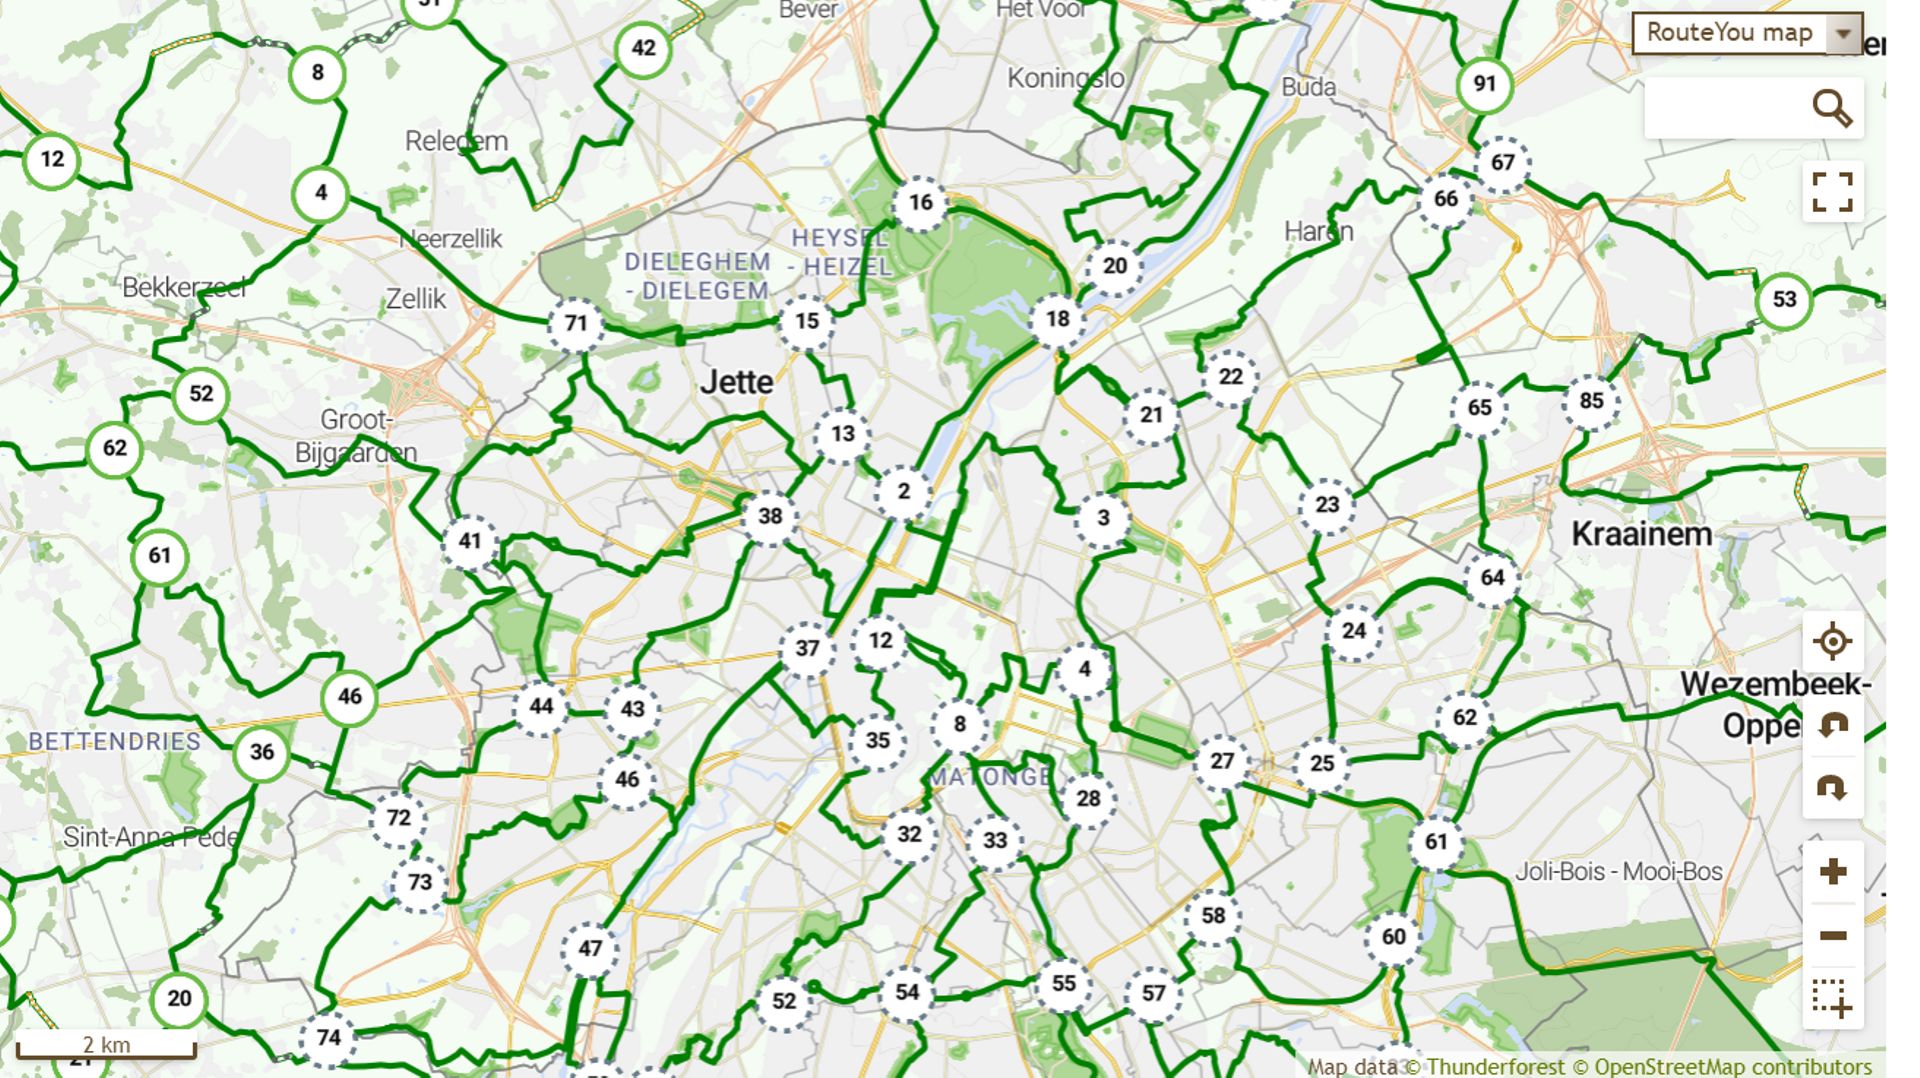 Un total de 252 km d'itinéraires cyclables sous forme points-nœuds numériques à Bruxelles